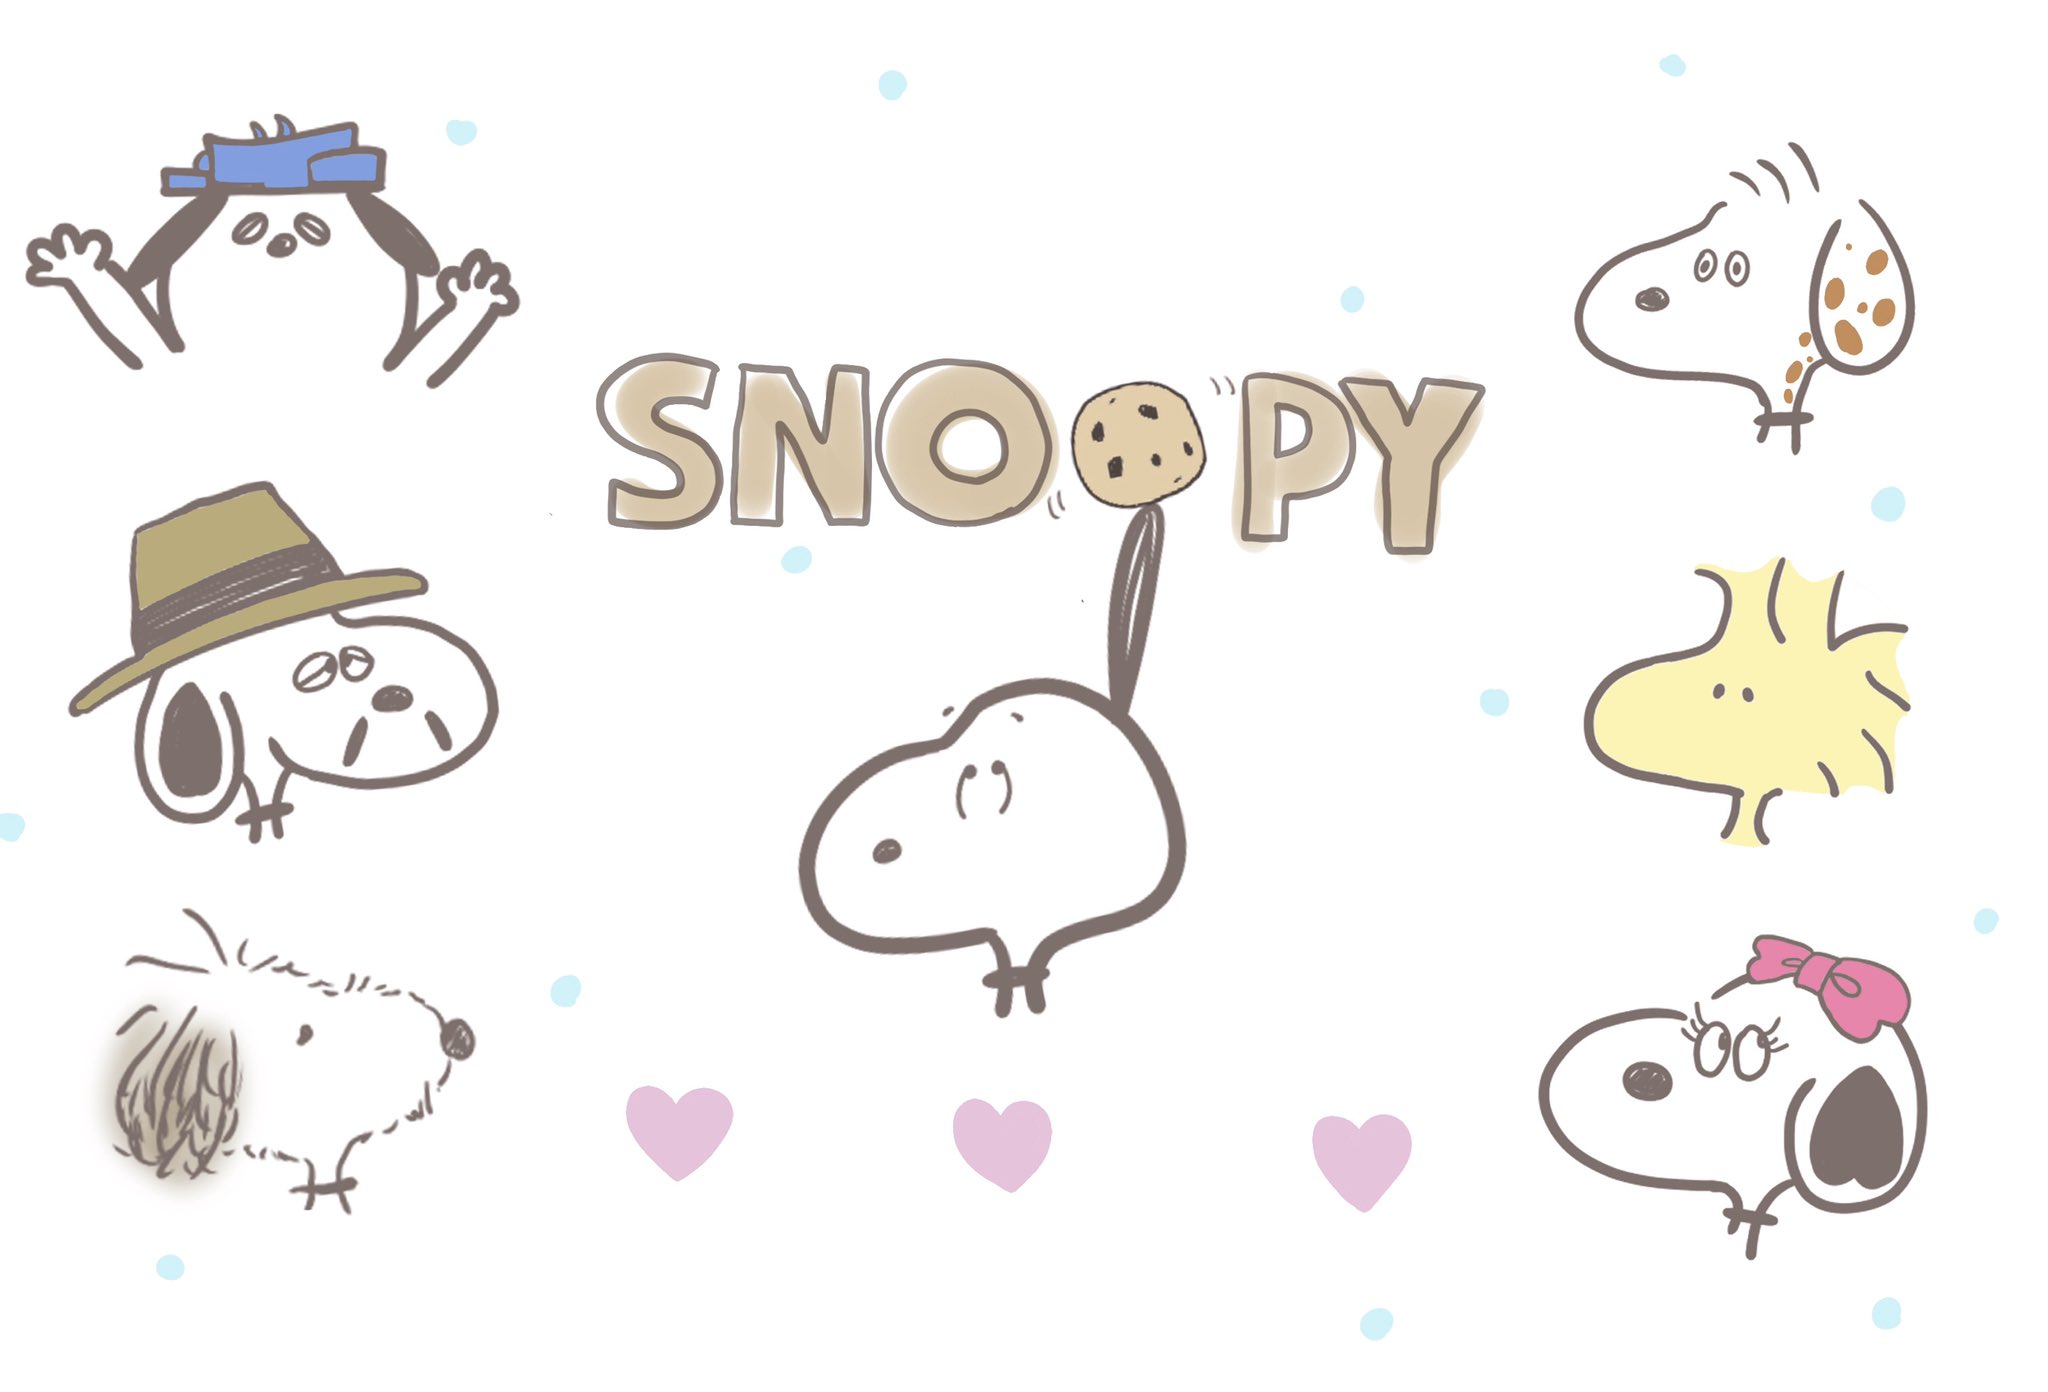 تويتر うさぎのぴちぱふちゃん 日本一周旅してきました على تويتر スヌーピー描いたよ スヌーピー Snoopy Snoopy ゆるいイラスト イラスト イラスト好きさんと繋がりたい 絵描きさんと繫がりたい お絵かき おえかき お洒落さんと繋がりたい 雑貨